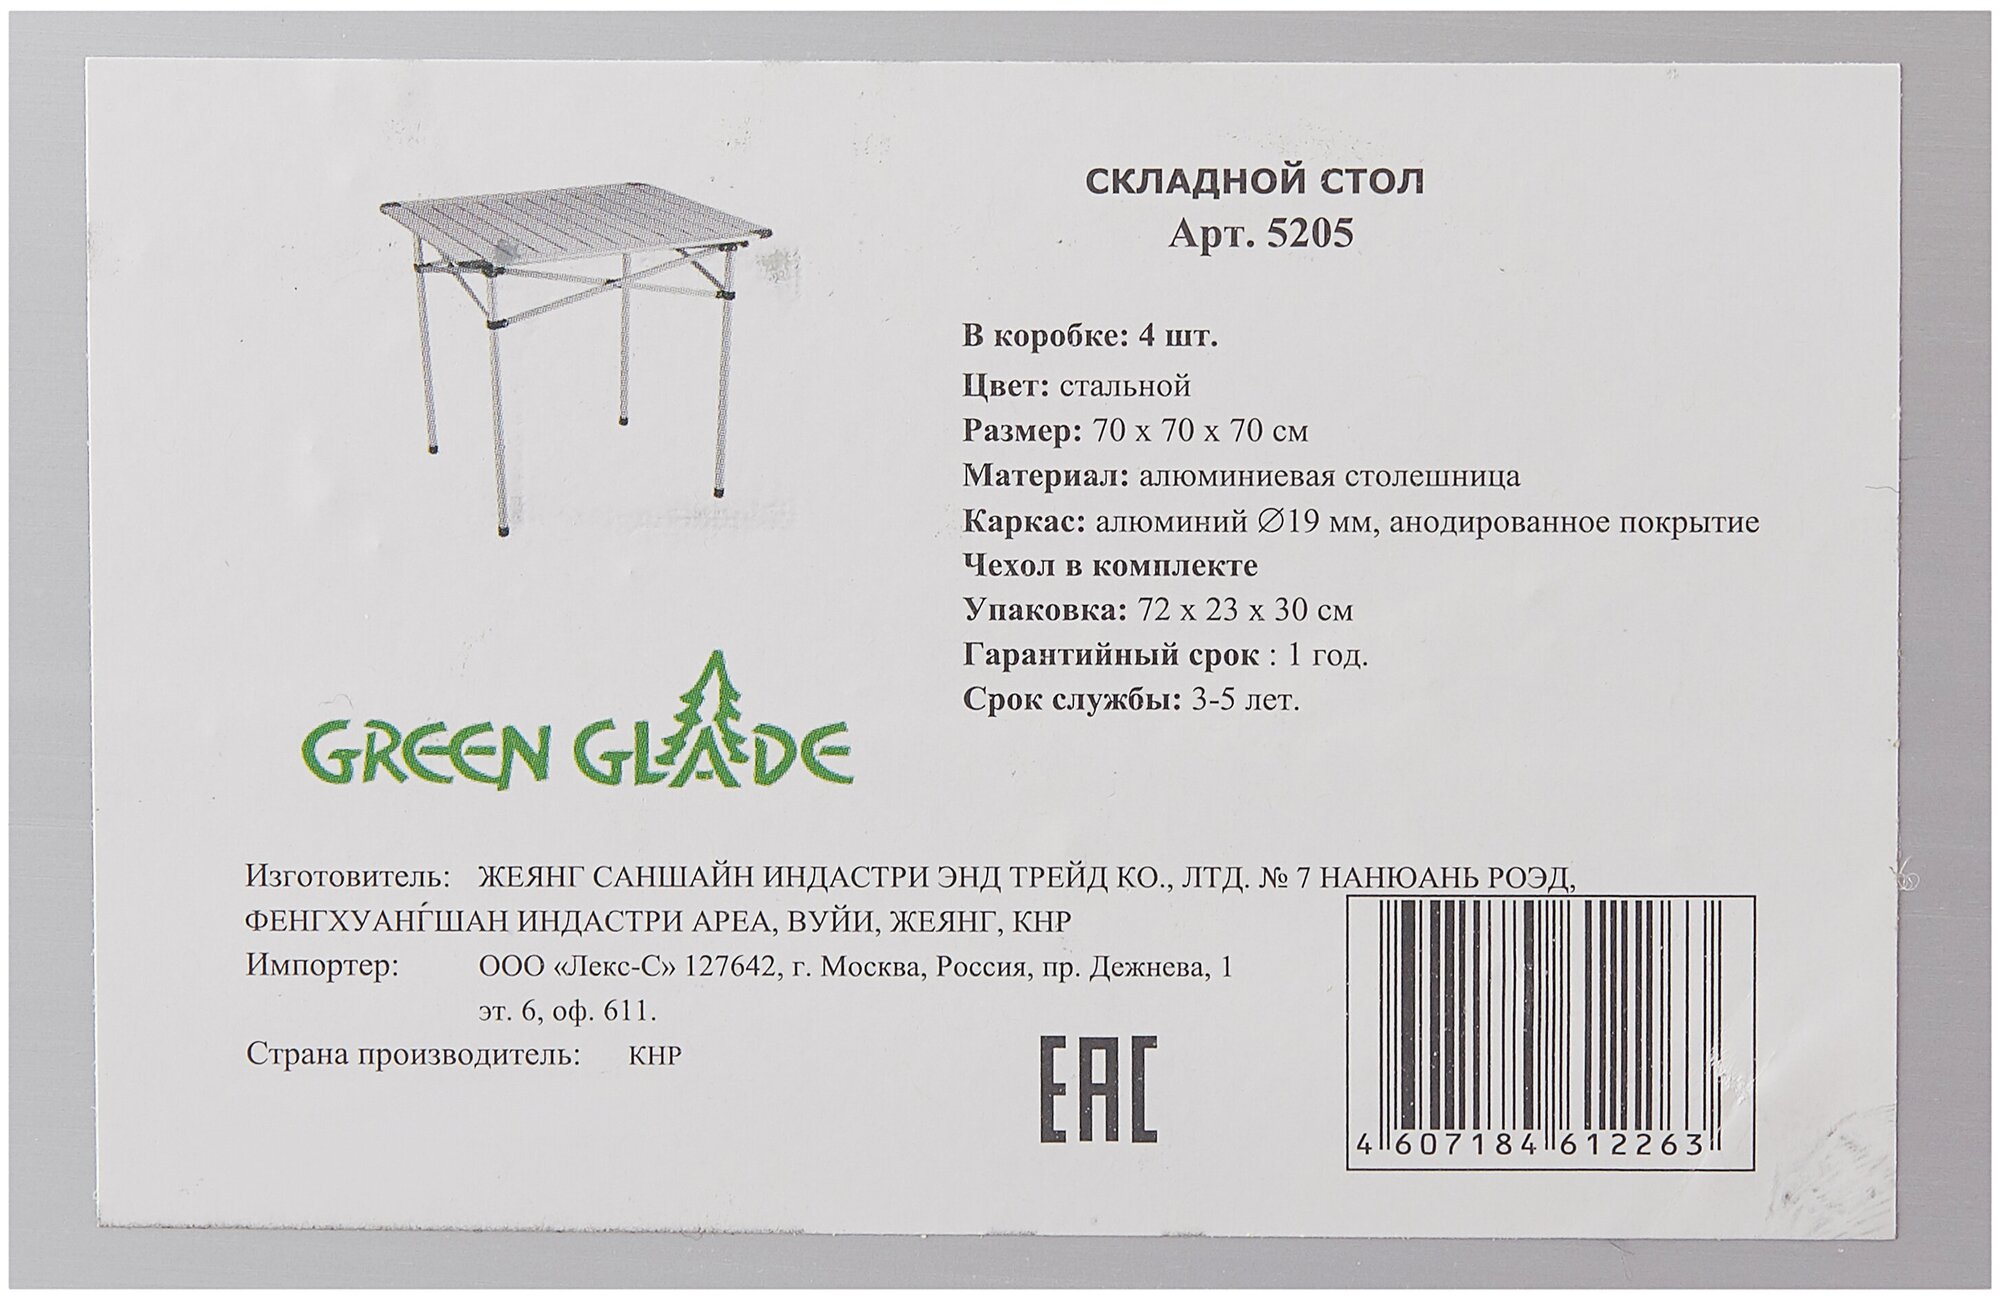 Походная мебель Green glade 5205